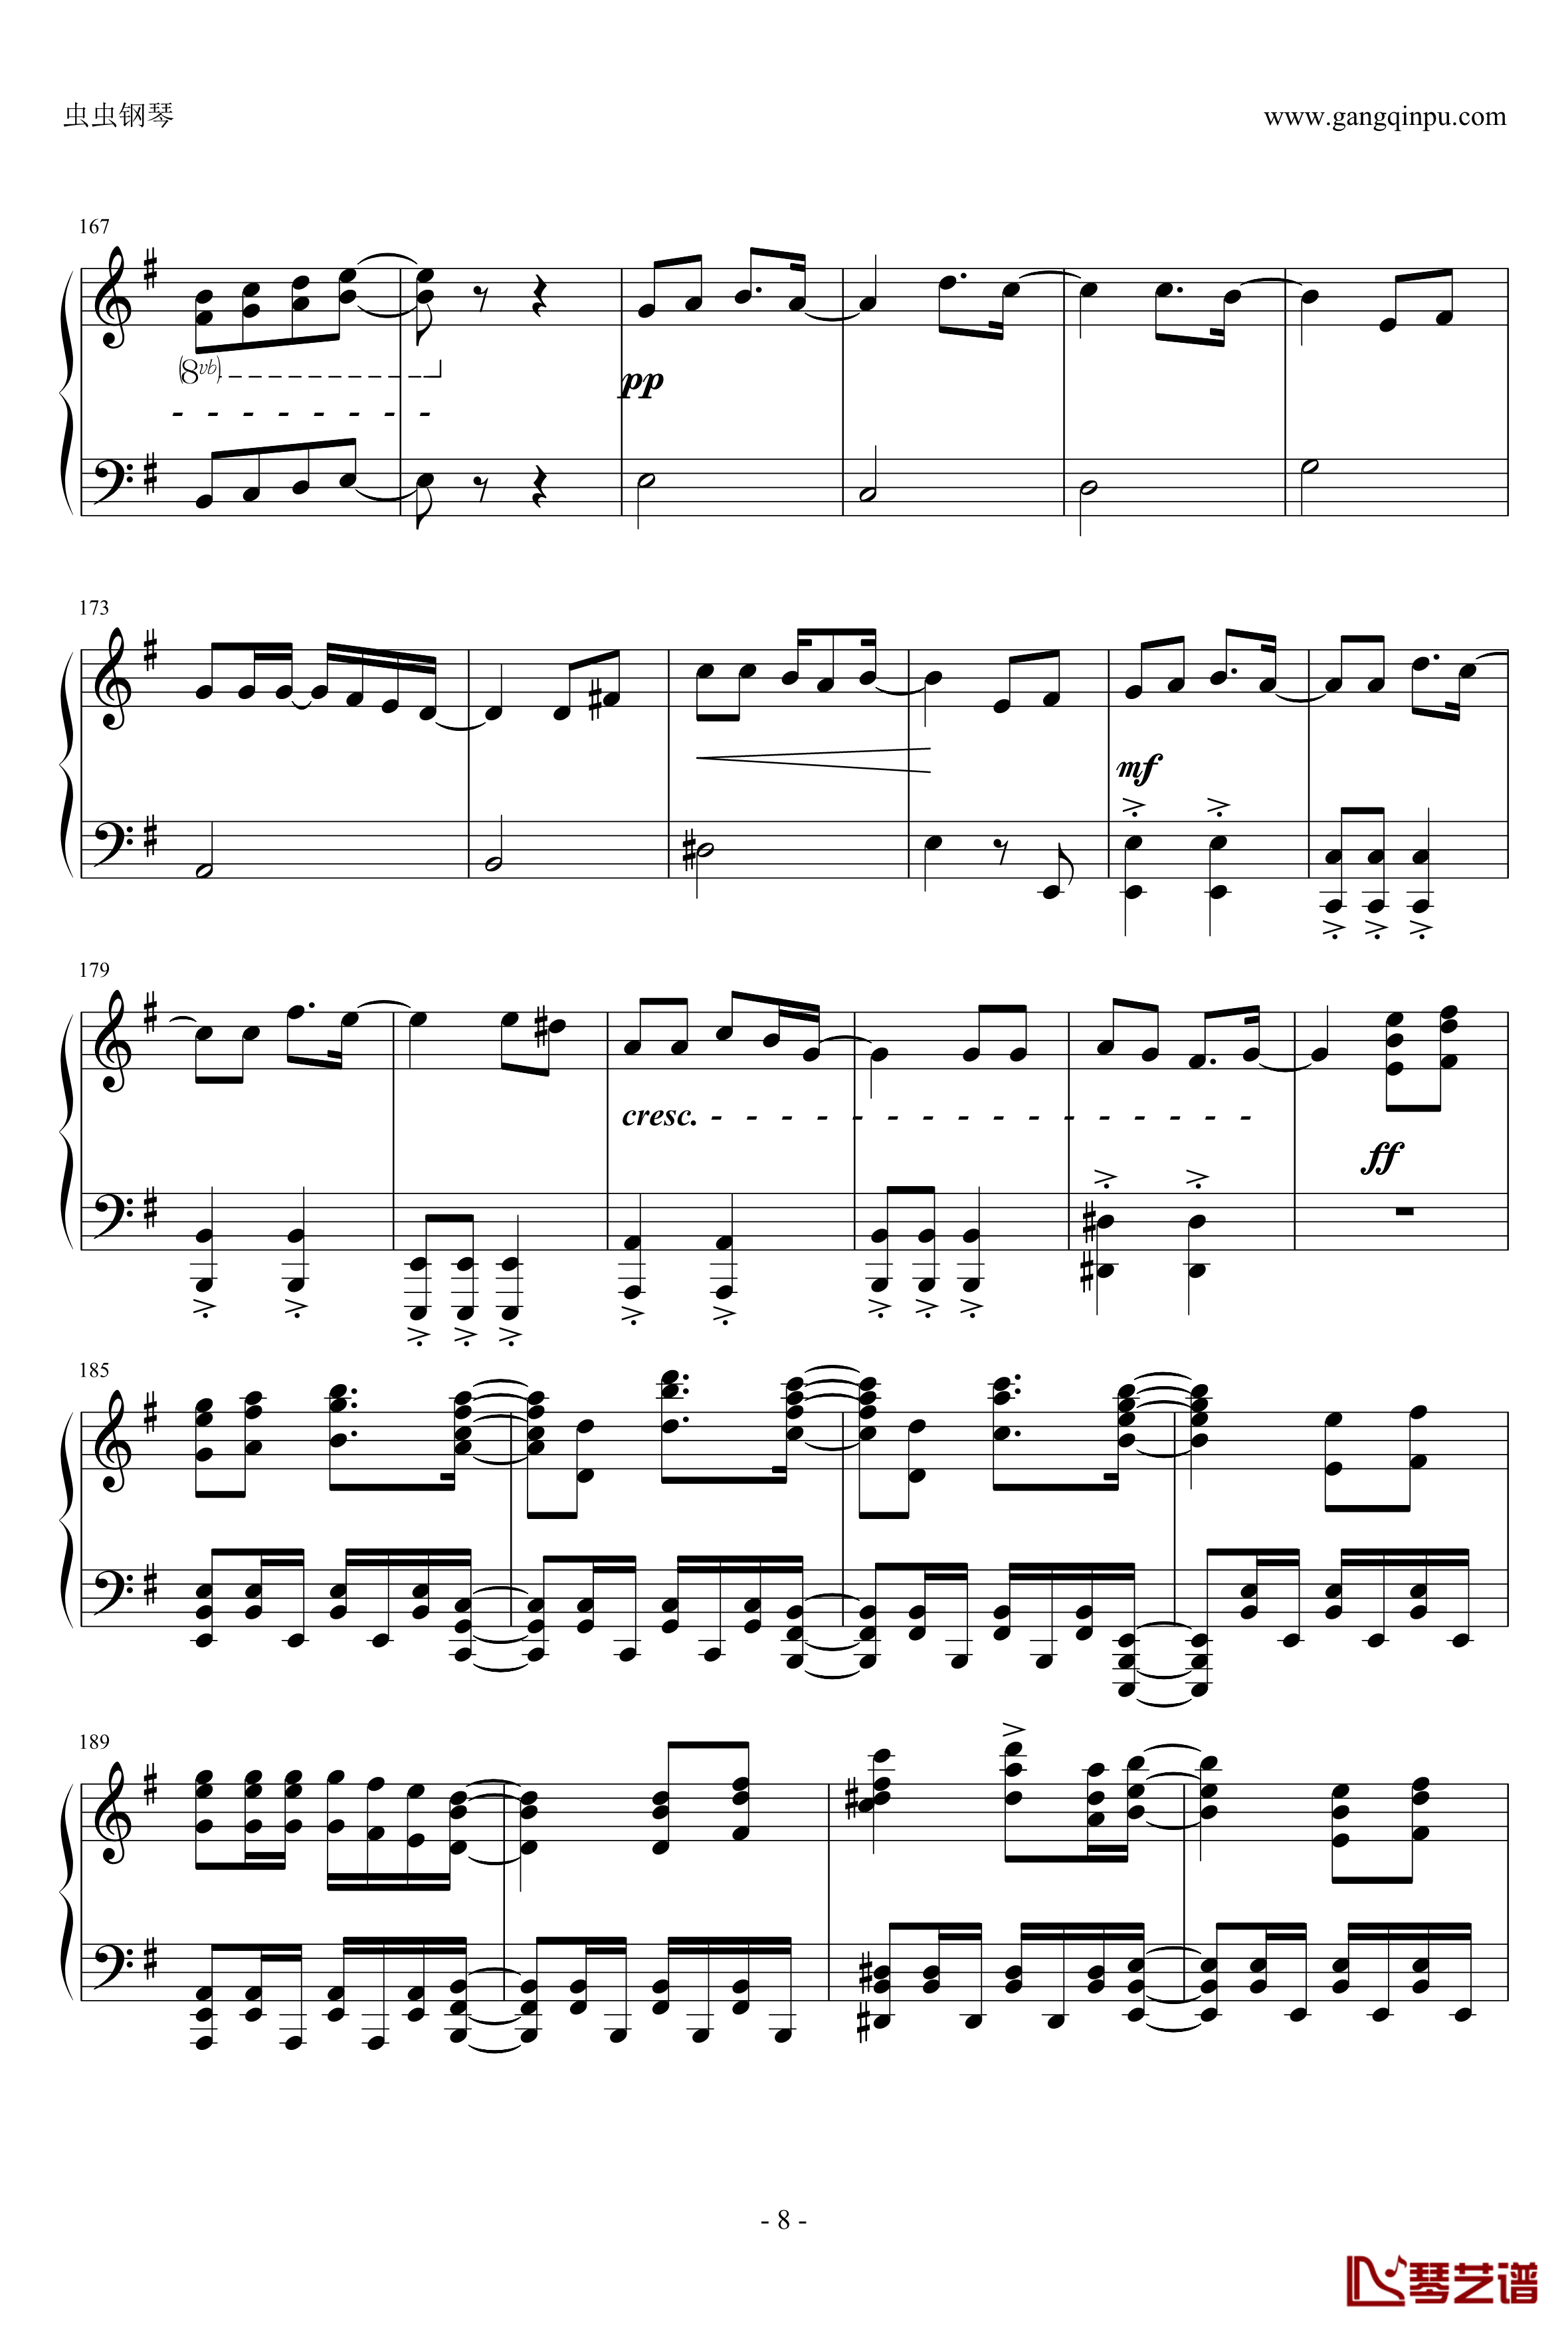 リンネ钢琴谱-piano ver. 改-初音ミク-初音未来8